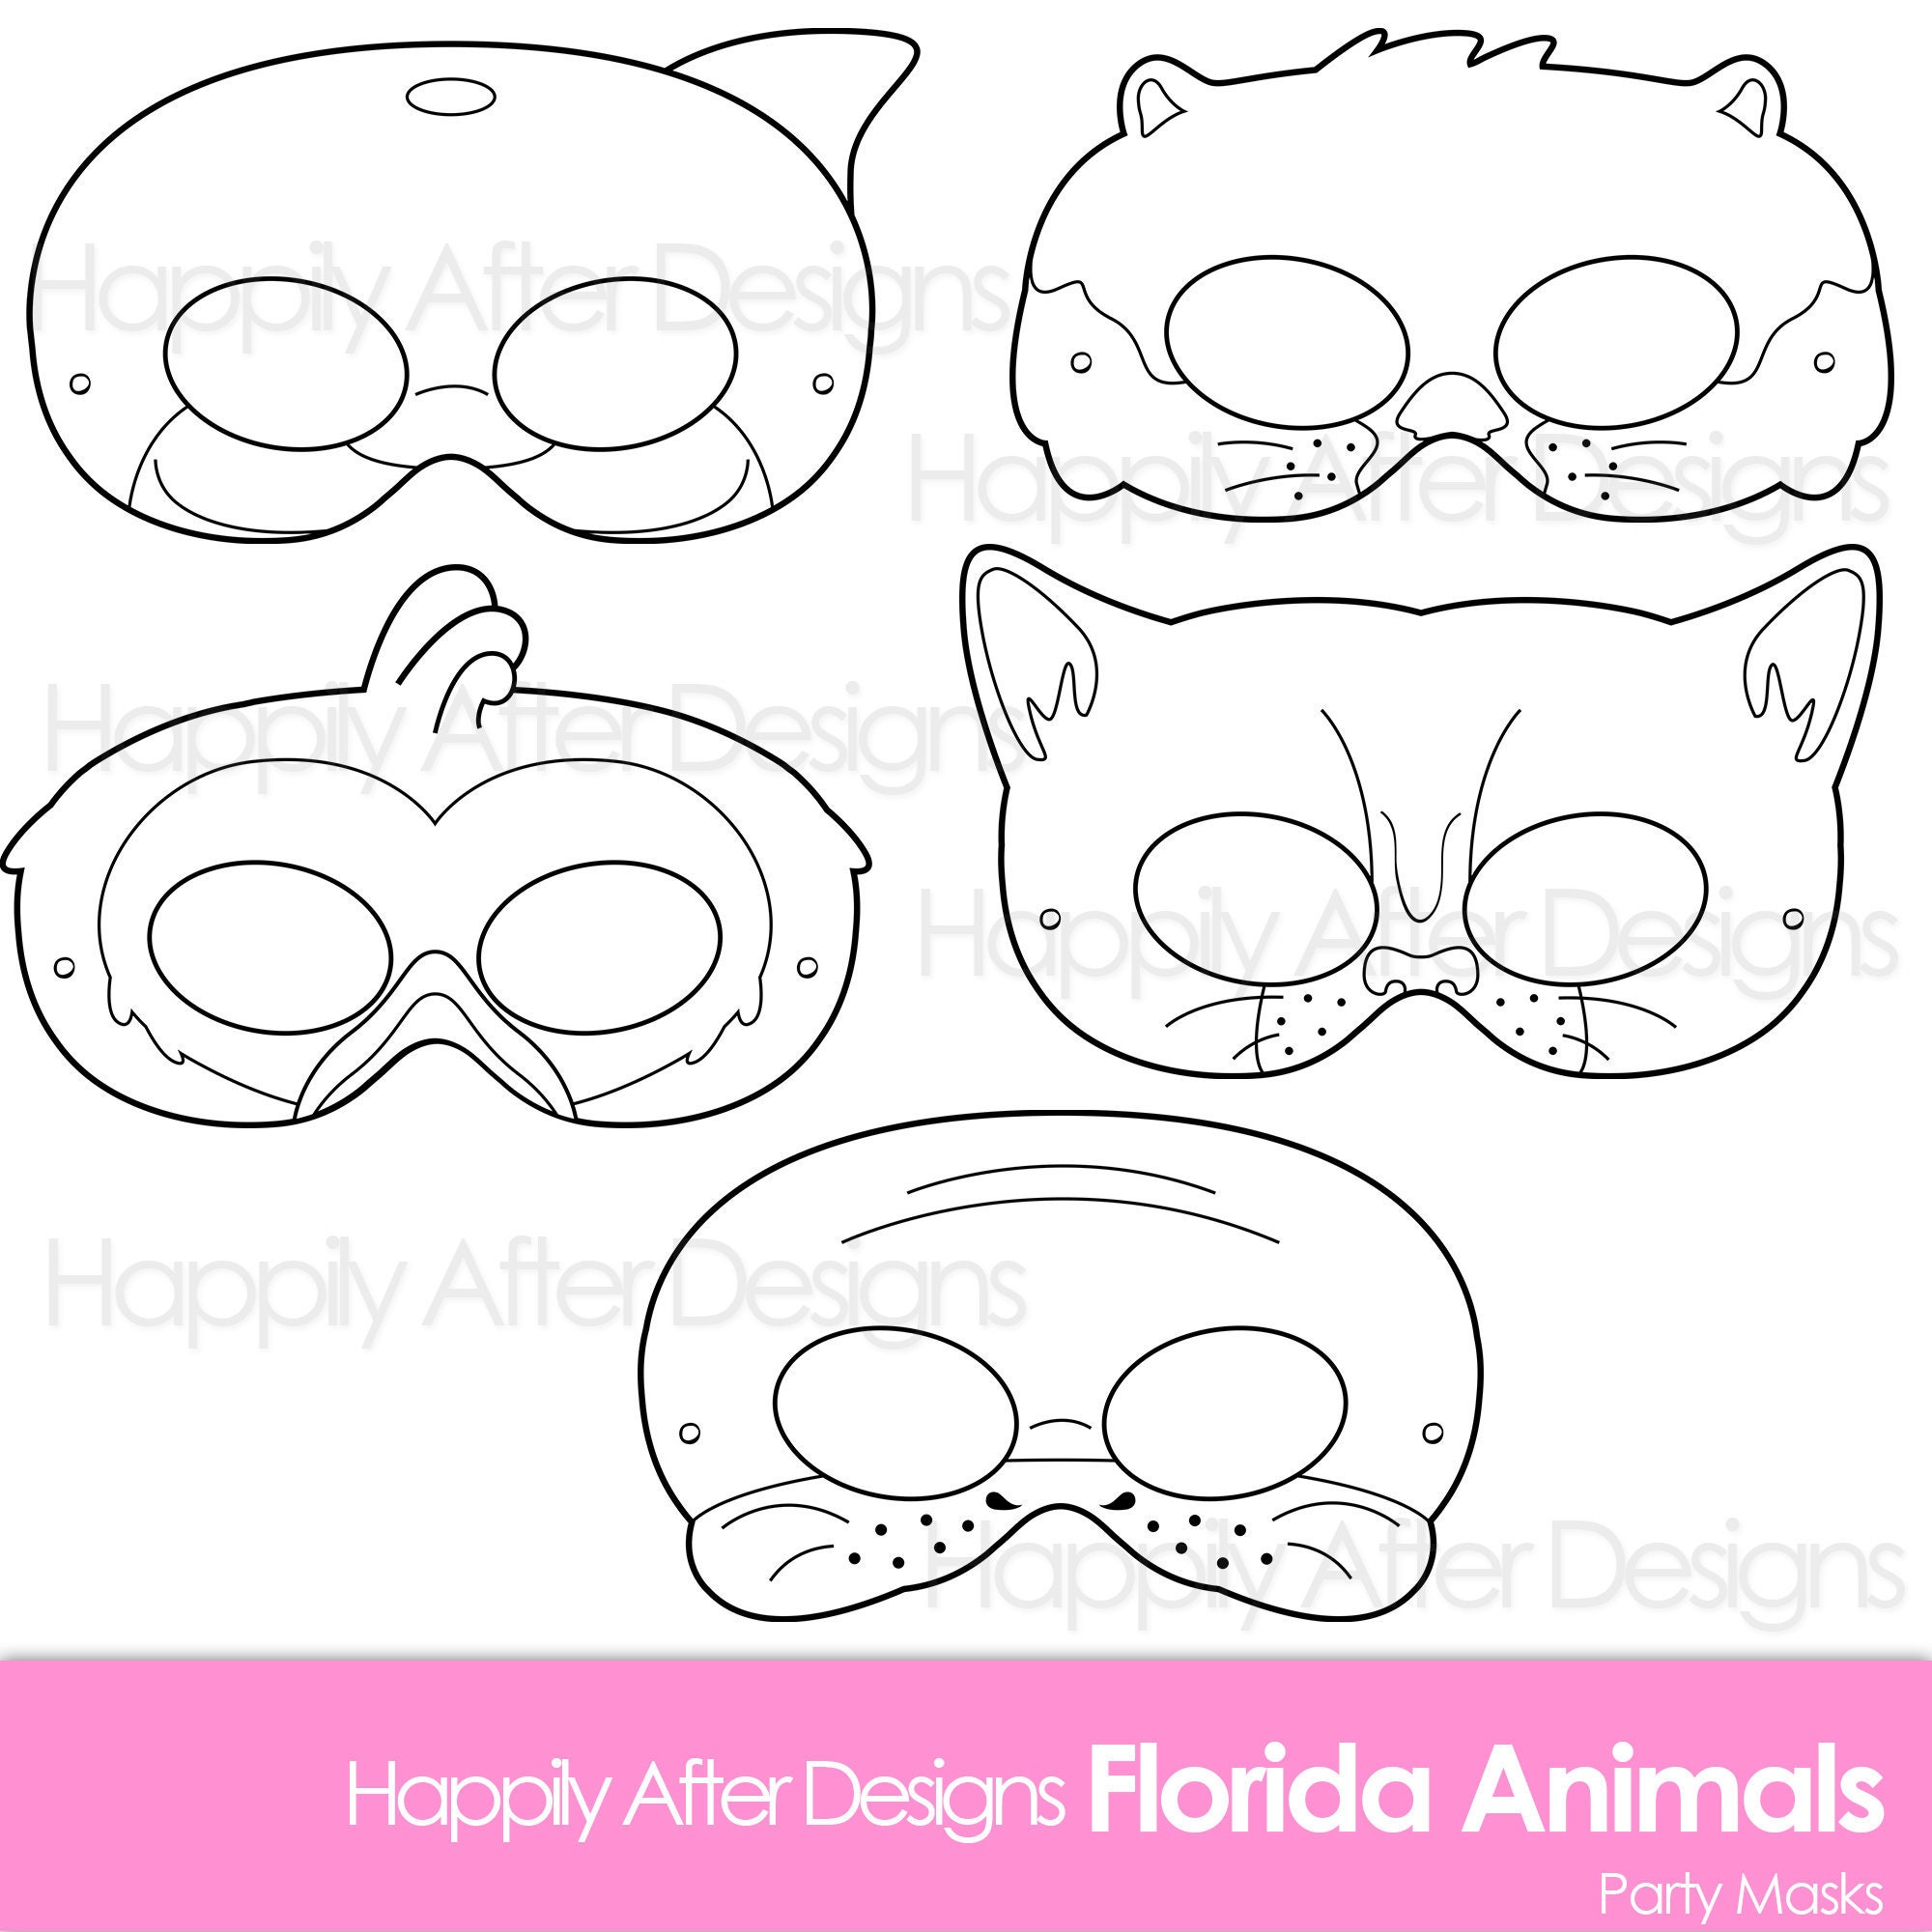 Florida Animals Printable Coloring Masks, dolphin mask, flamingo mask,  manatee mask, panther mask, otter mask, cat mask, animal mask, bird